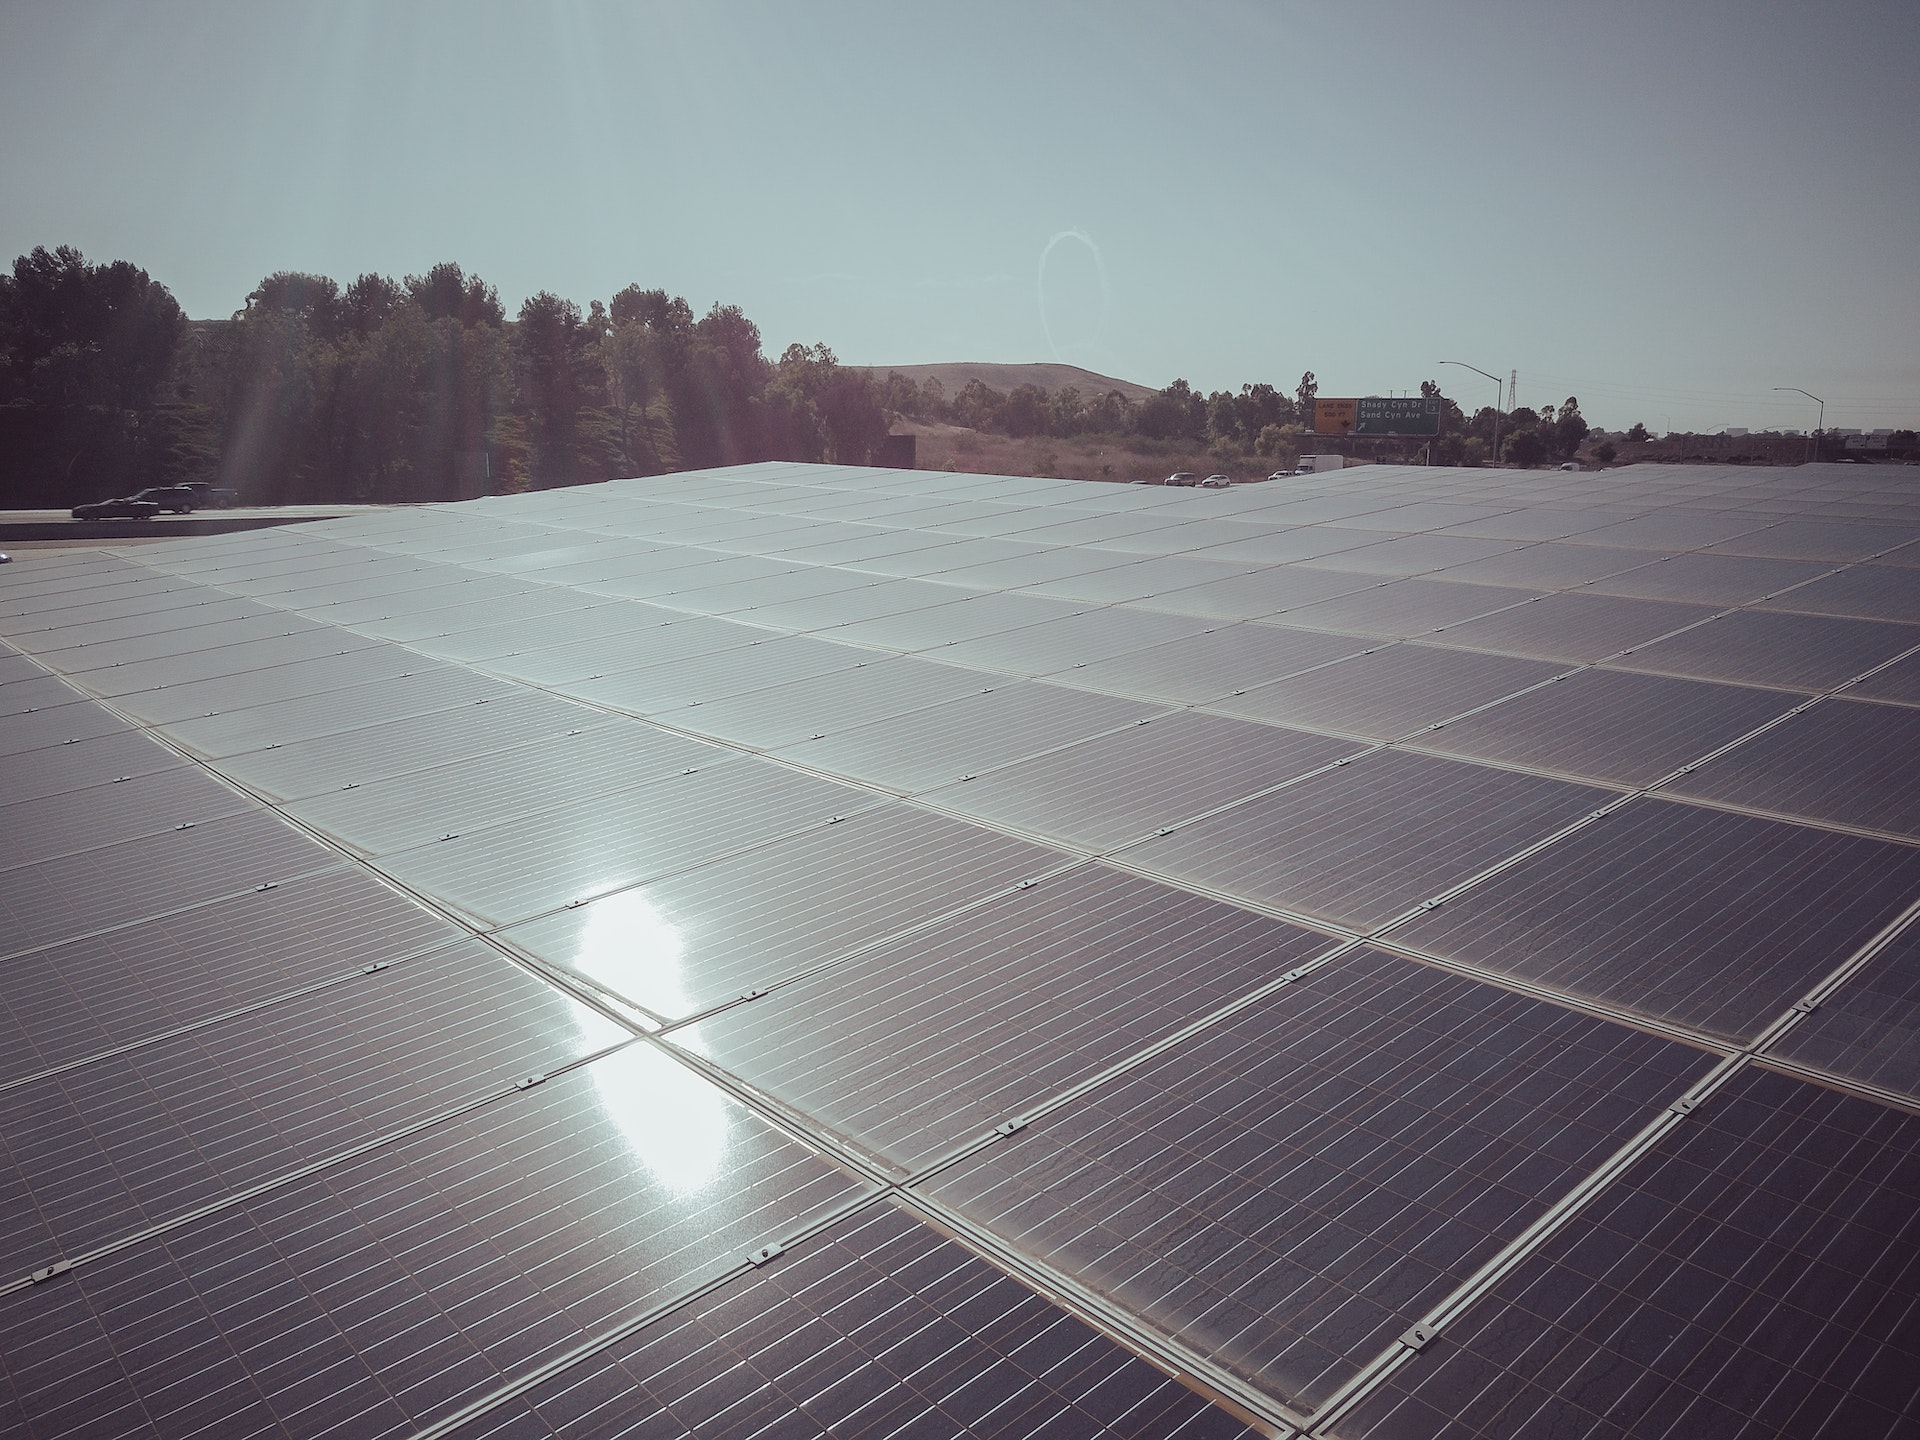 annee 2022 record pour solaire photovoltaique dans union europeenne - L'Energeek